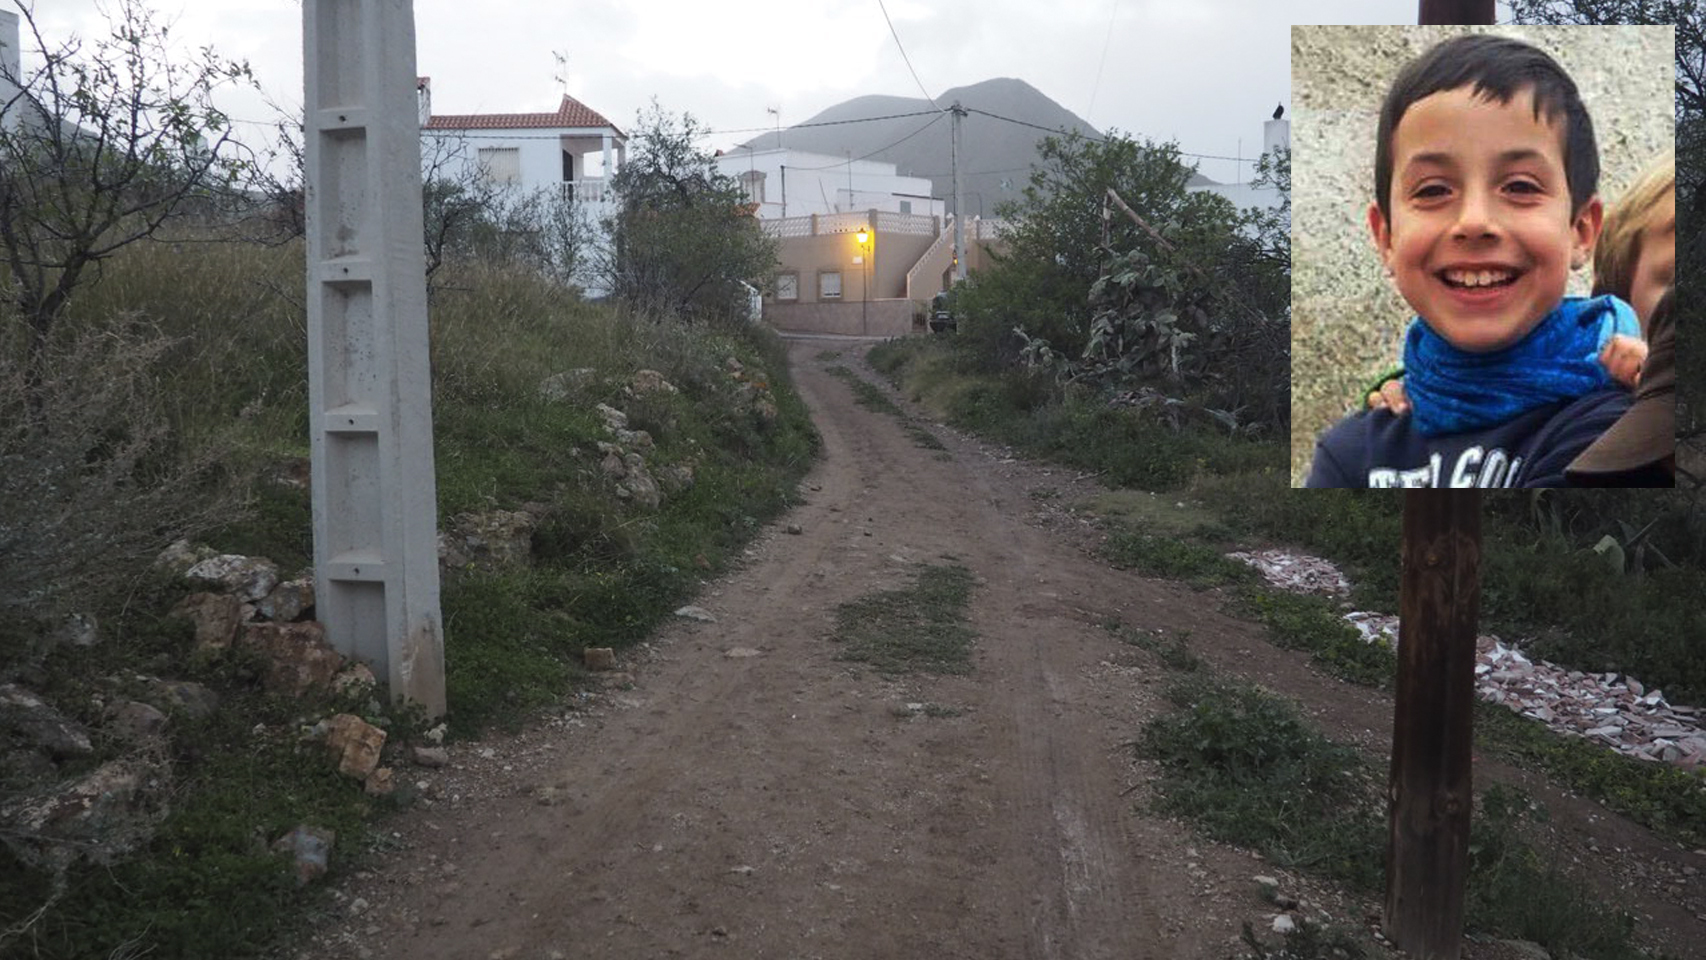 Camino de tierra que conduce hasta el lugar por el que accedió una furgoneta blanca y en donde se le perdió el rastro a Gabriel Cruz, de ocho años.